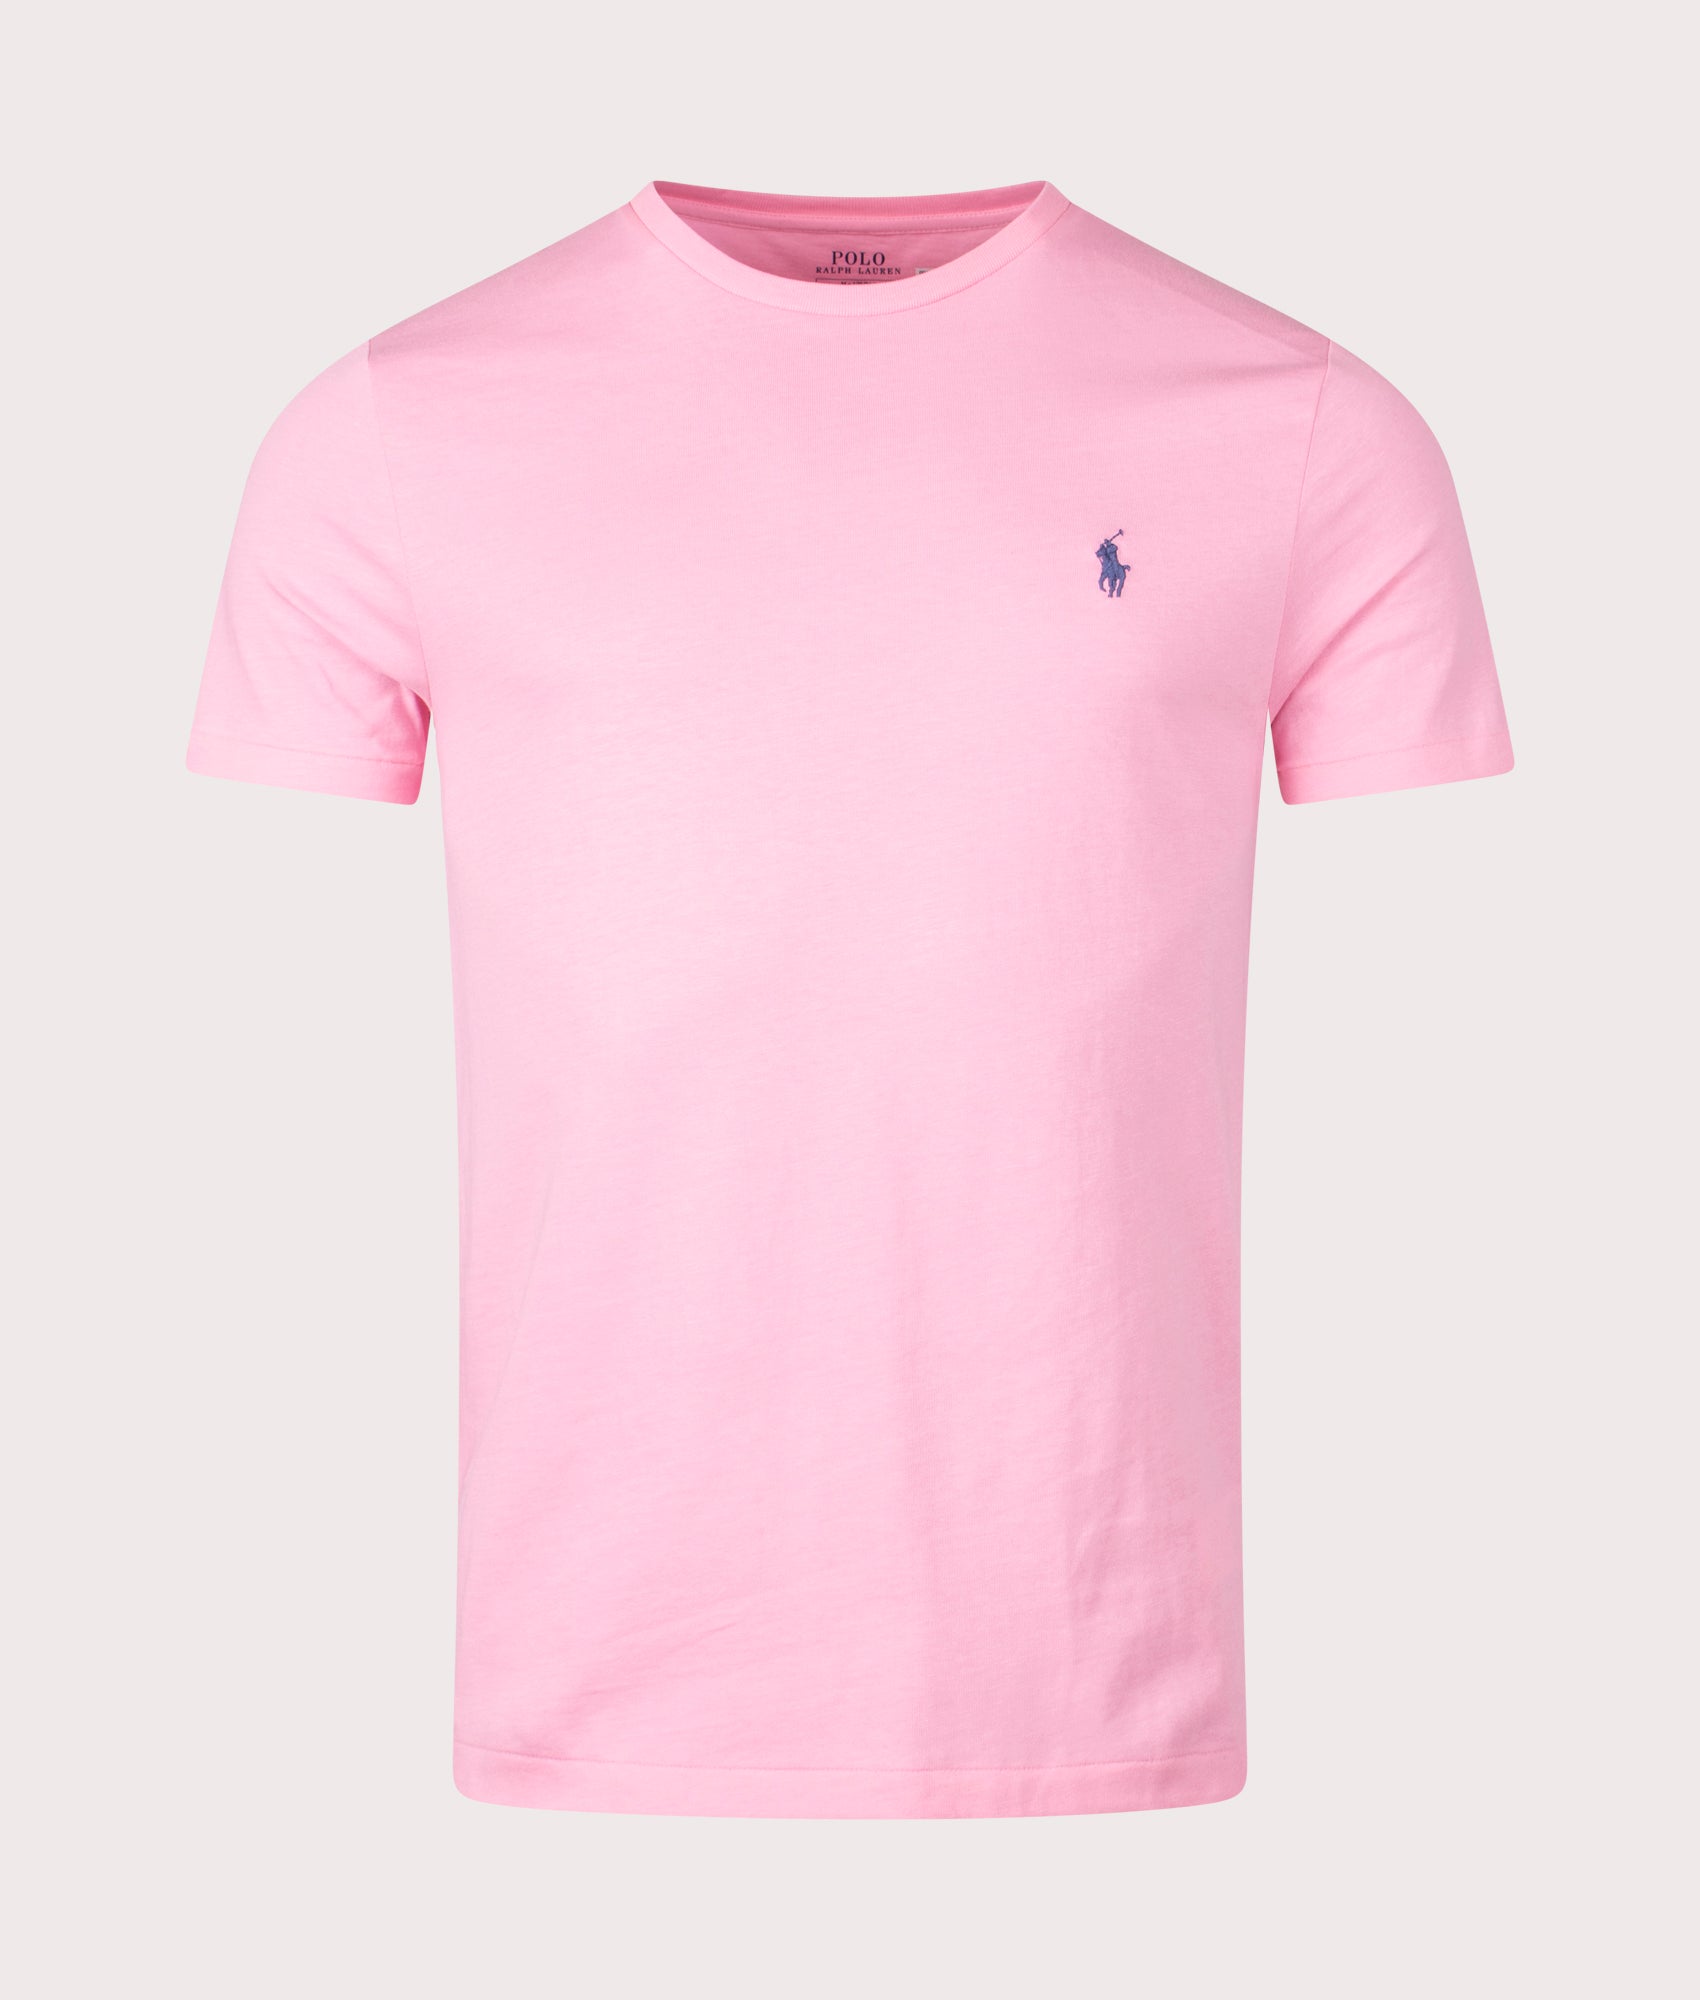 Polo Ralph Lauren Mens Custom Slim Fit T-Shirt - Colour: 346 Course Pink - Size: Large